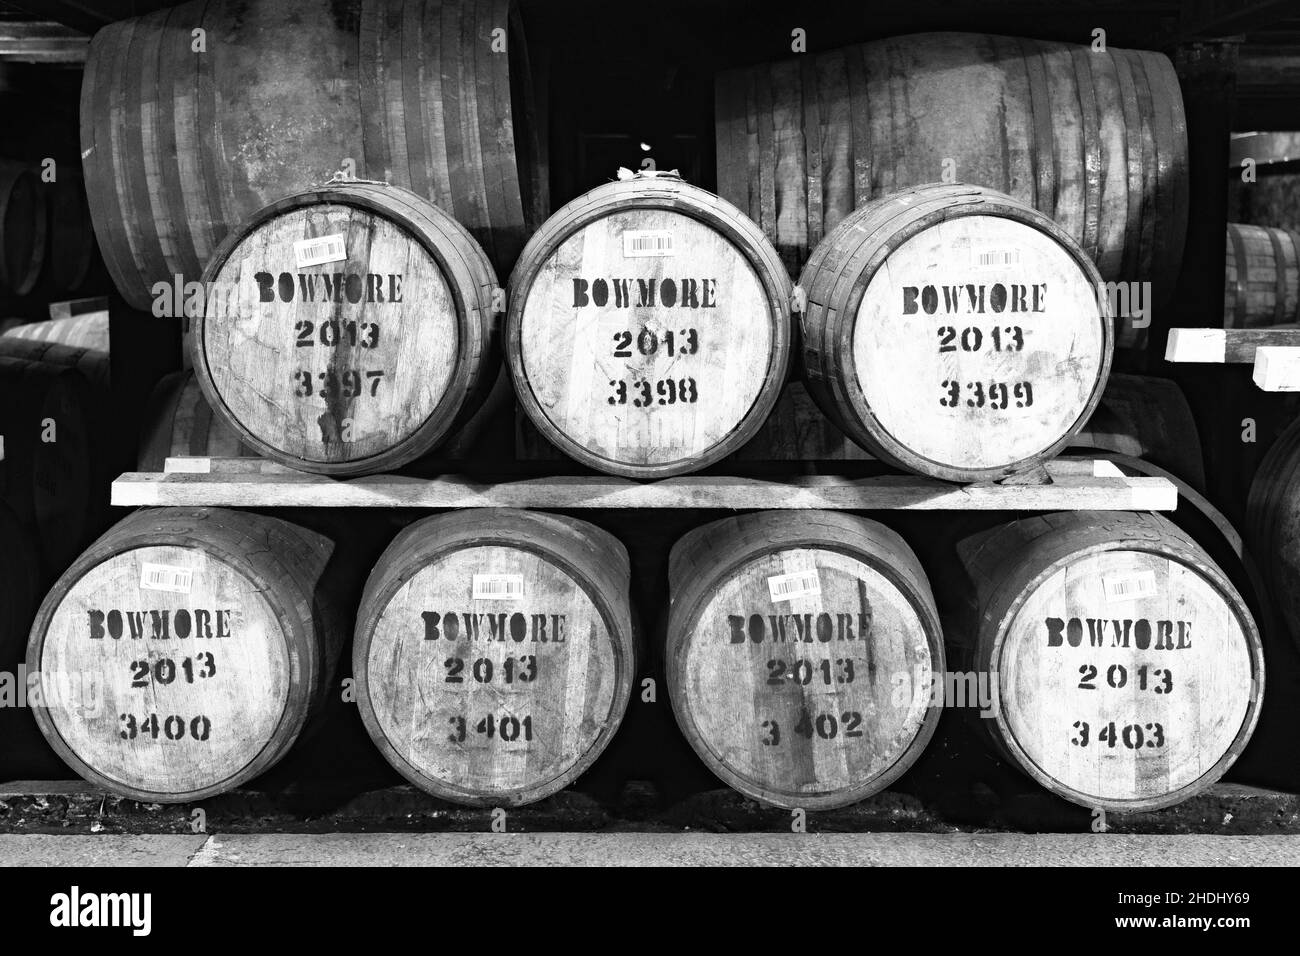 Anzeigen von Scotch Whisky Barrel im Lager an der Bowmore Distillery auf der Insel Islay im Inneren Hebriden von Schottland, Großbritannien Stockfoto